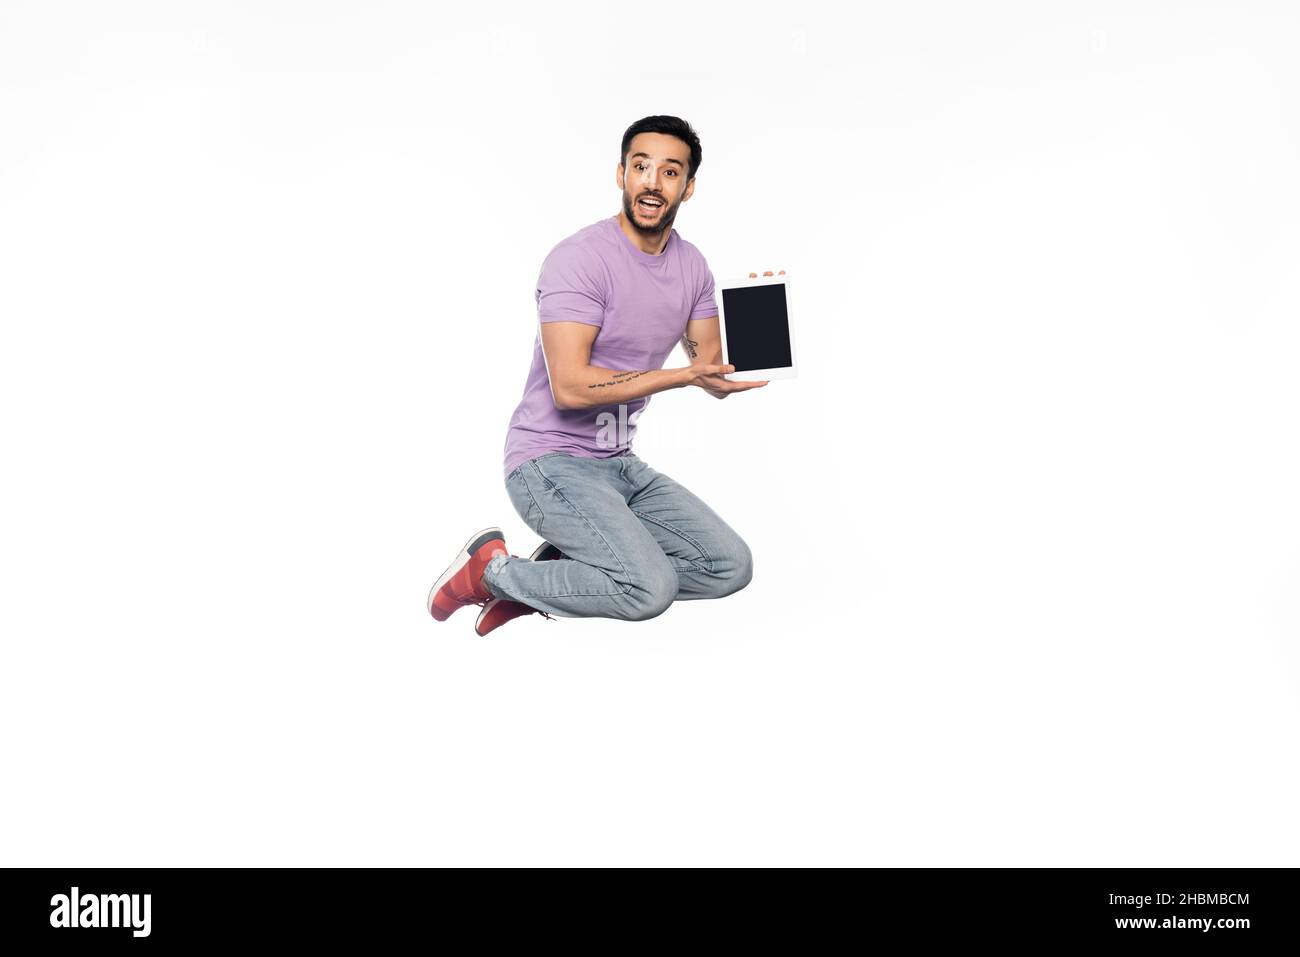 un homme émerveillé avec un jean et un t-shirt violet qui se levent tout en tenant la tablette numérique sur le blanc Banque D'Images